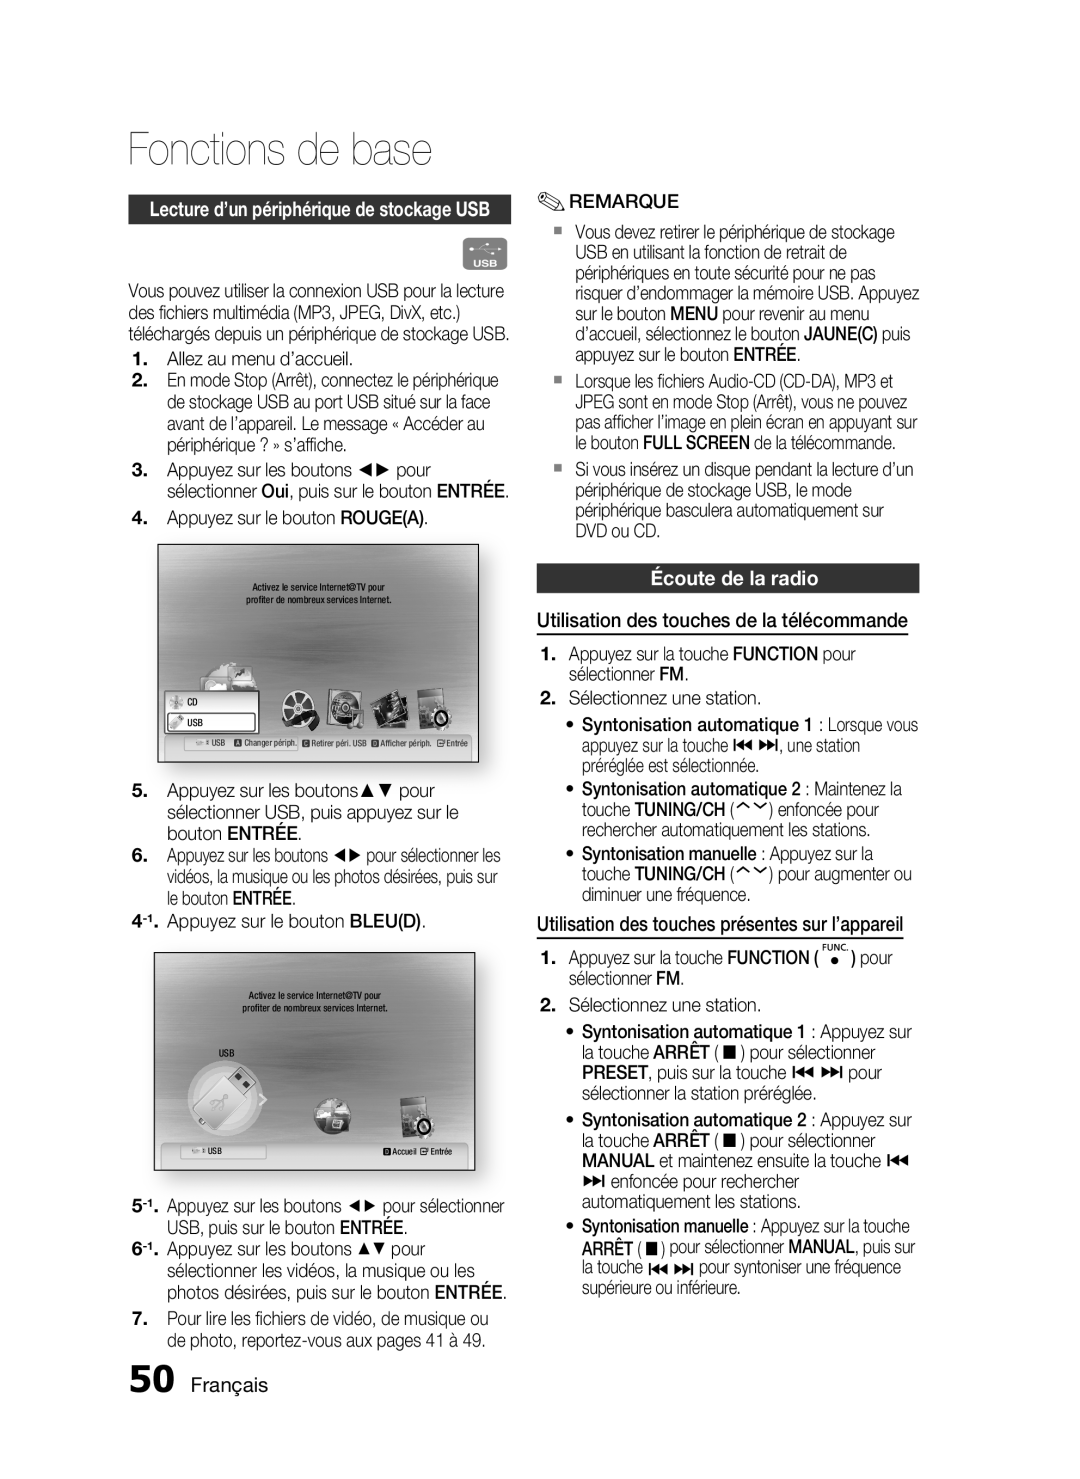 Samsung HT-C6200/XEF manual Écoute de la radio, Utilisation des touches de la télécommande, Français, Fonctions de base 